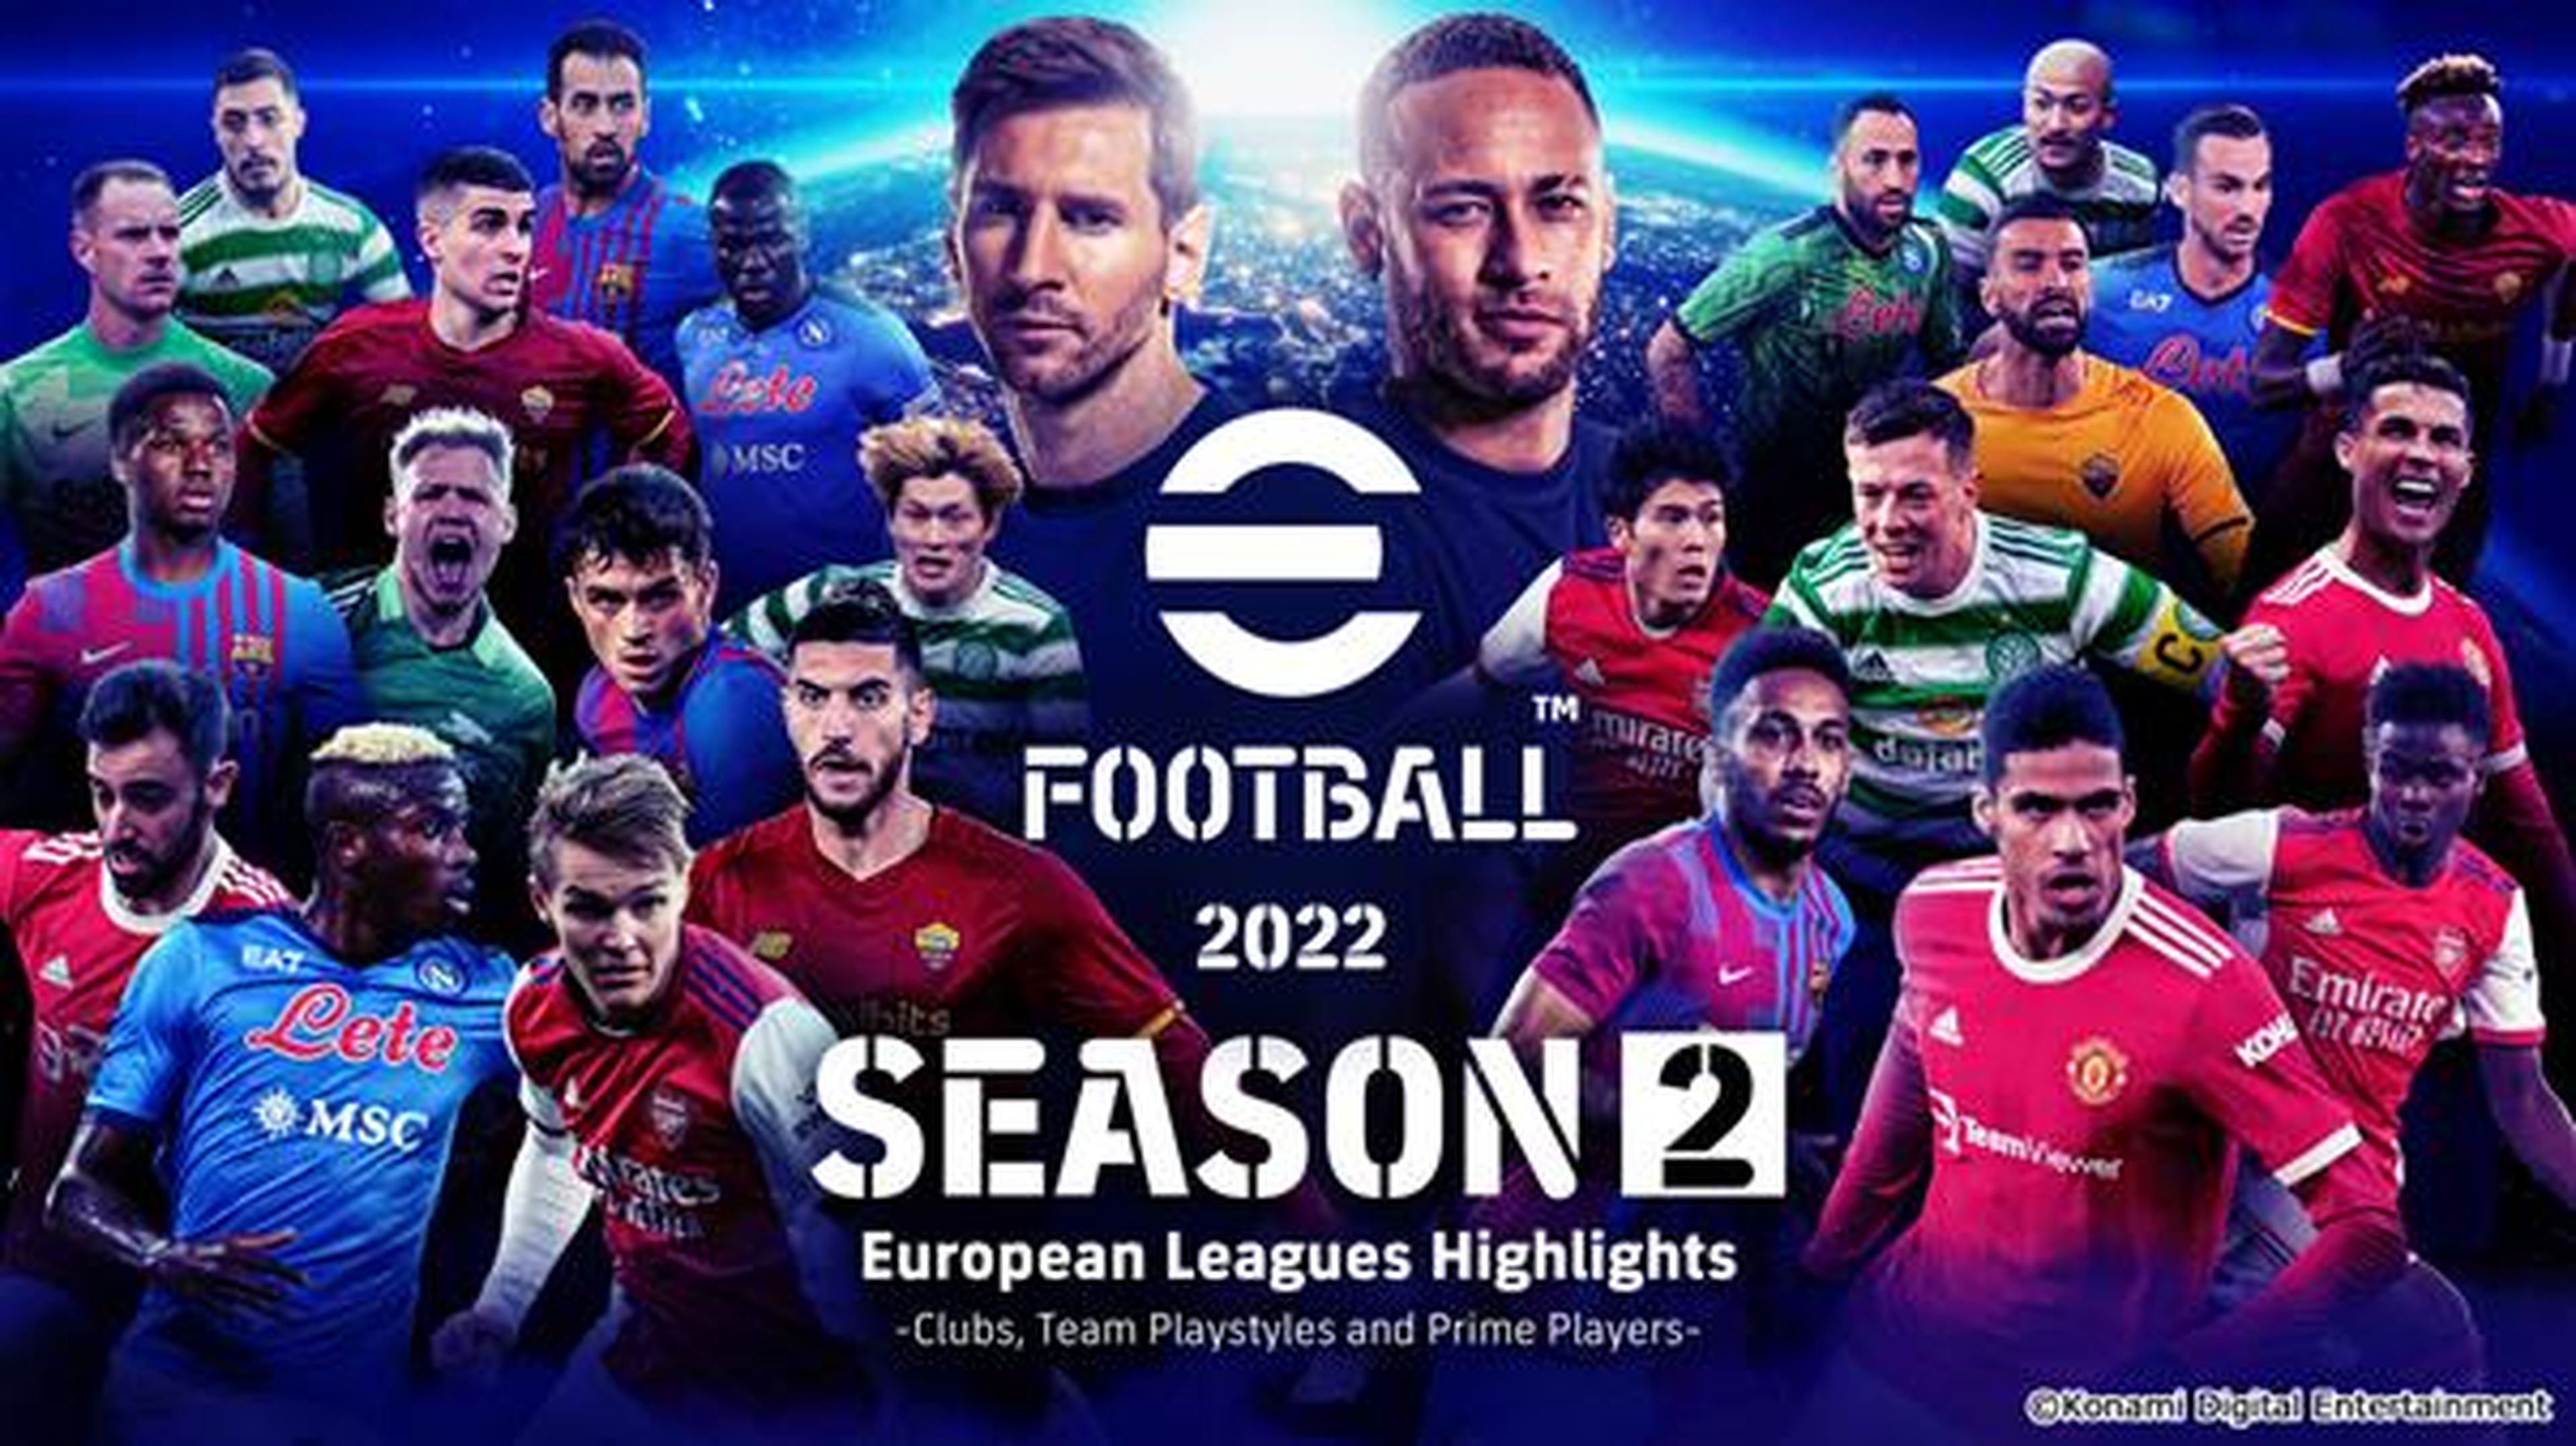 Impresiones de eFootball 2022, el juego de fútbol que aún sigue de calentamiento con su Temporada 2